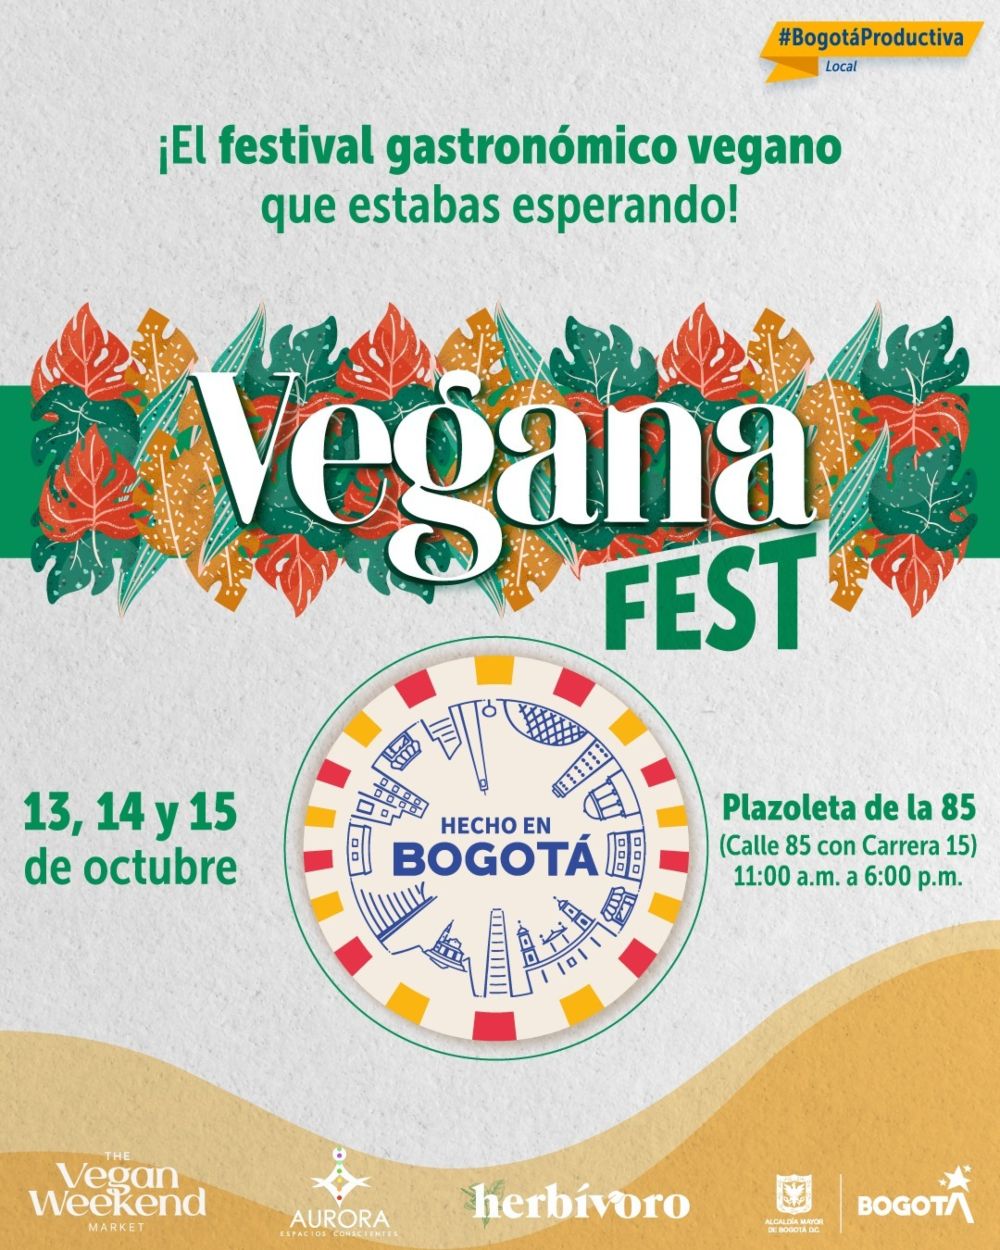 Imagen relacionada al Vegana Fest de Hecho en Bogotá